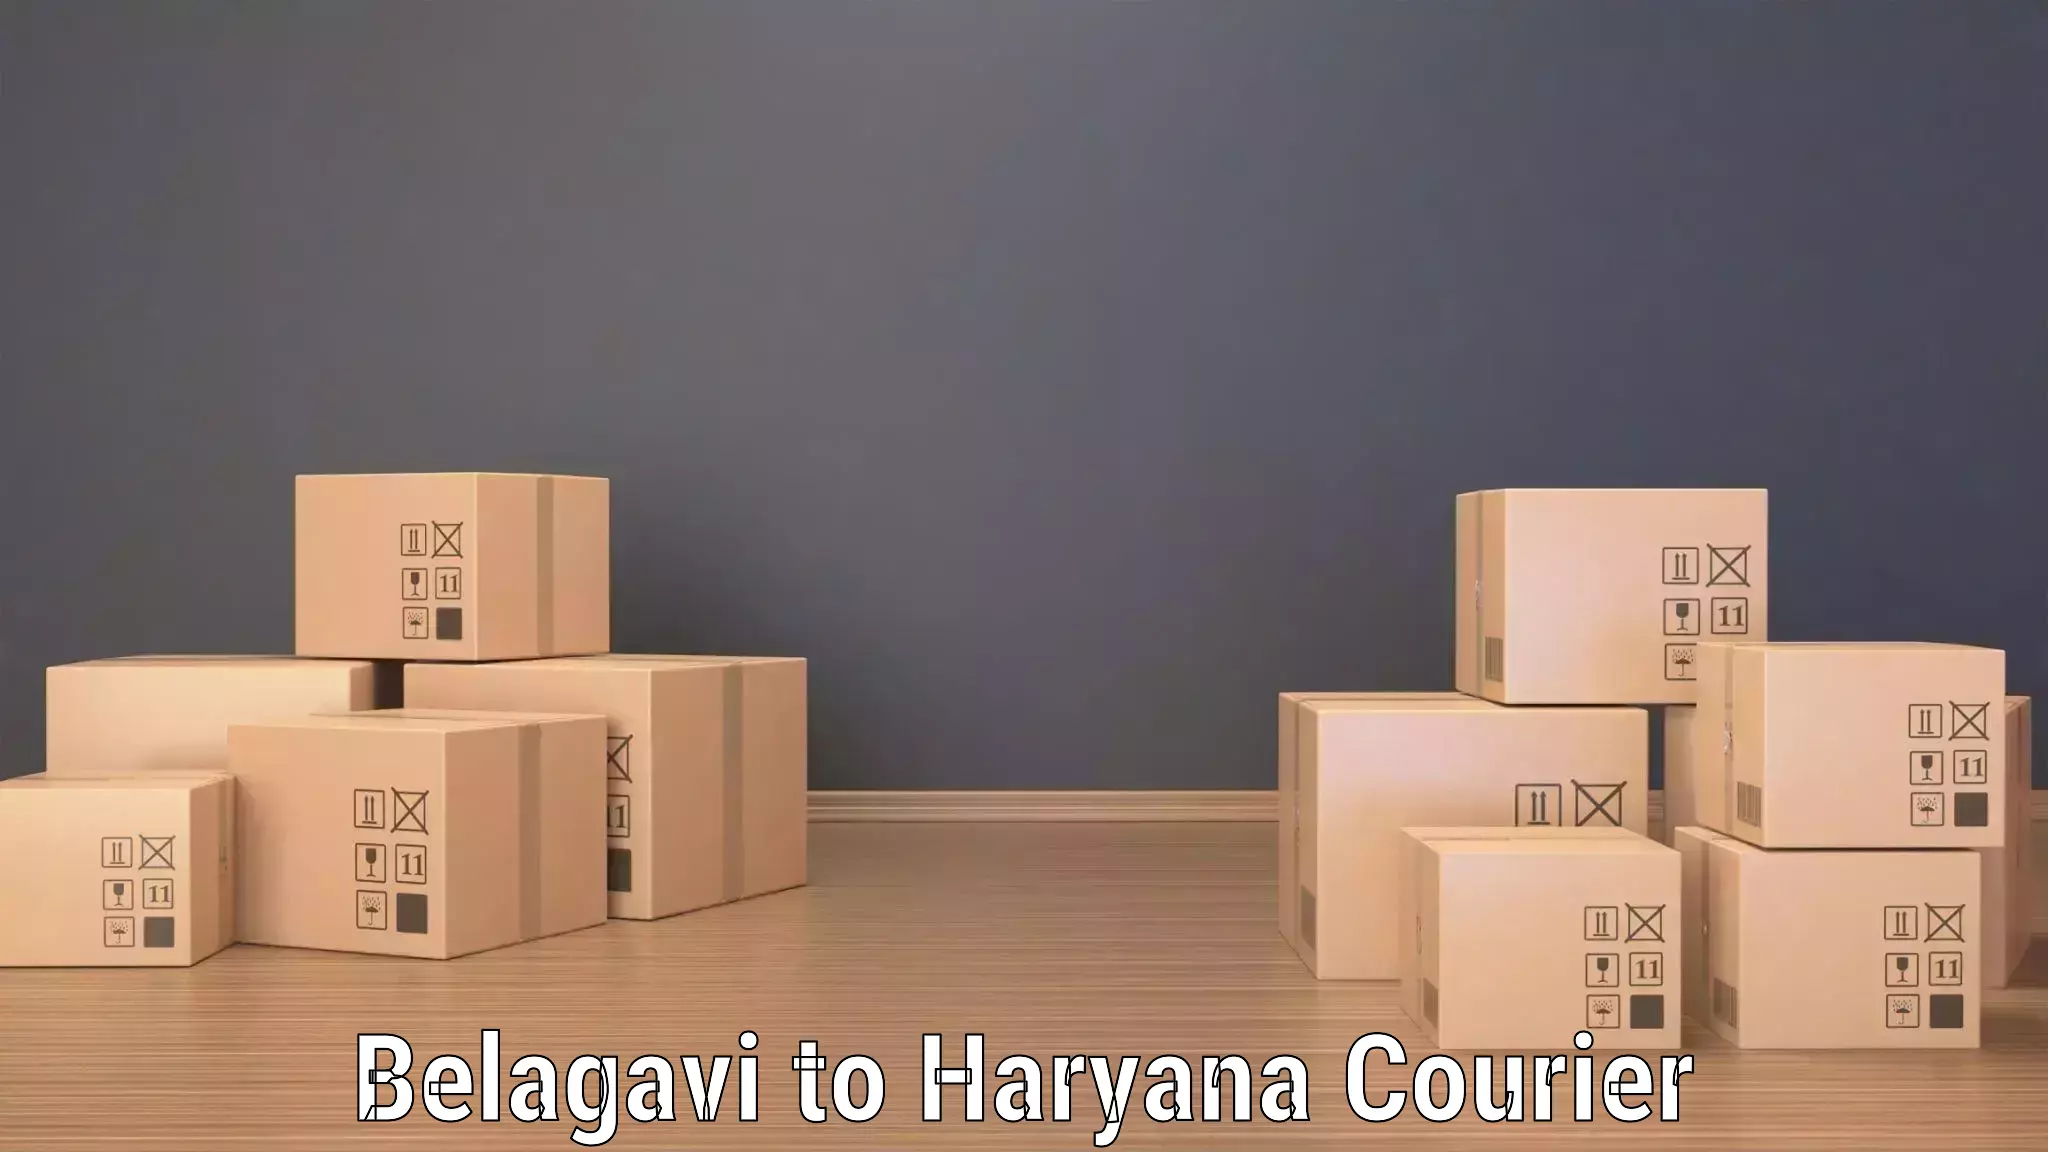 Customer-centric shipping Belagavi to NCR Haryana